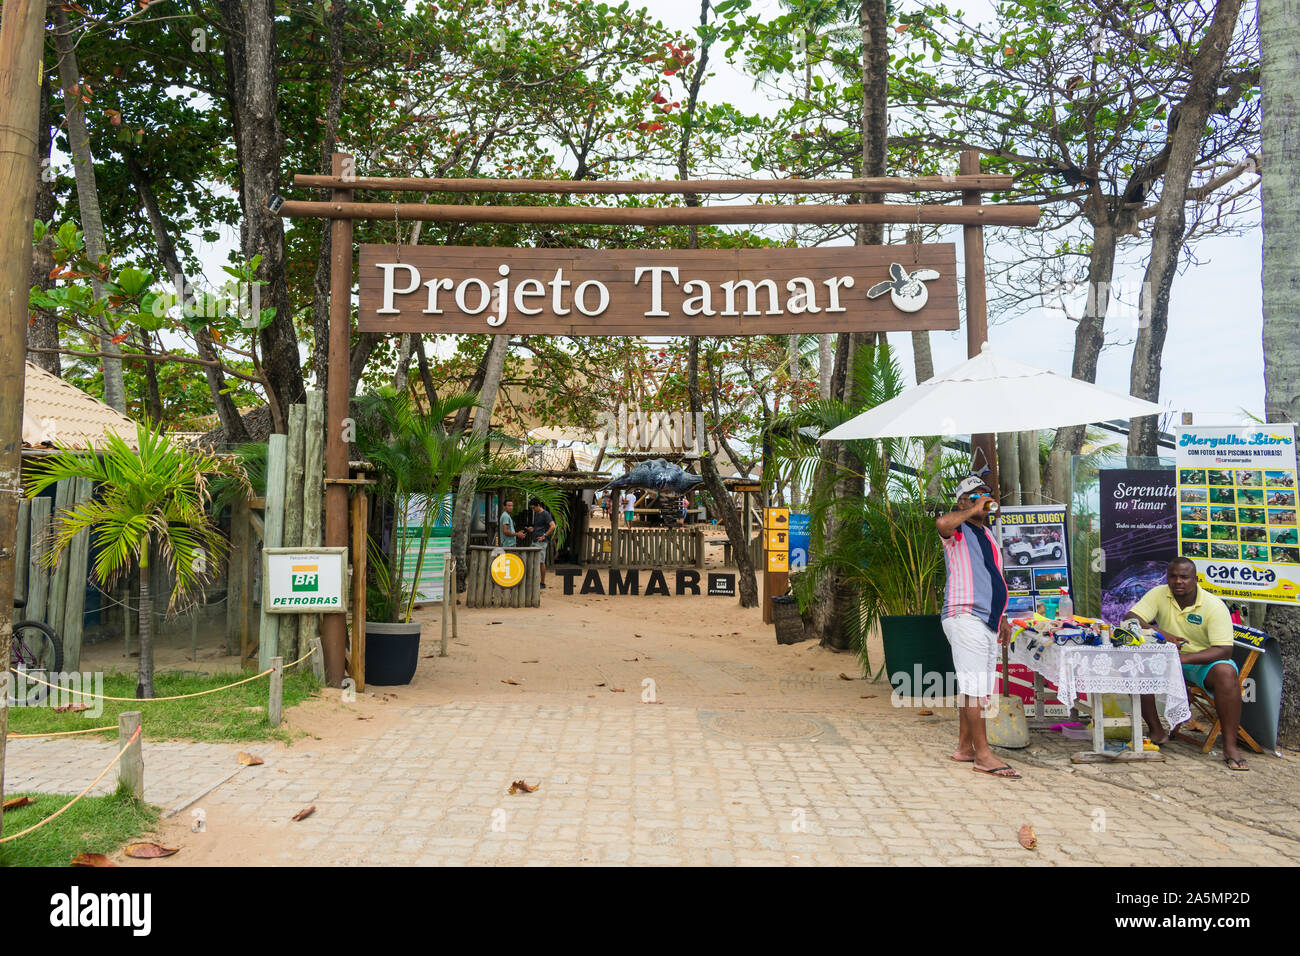 Praia do Forte, le Brésil - Circa 2019 Septembre : Entrée de Projeto Tamar, une organisation sans but lucratif qui s'occupe des tortues de mer Banque D'Images